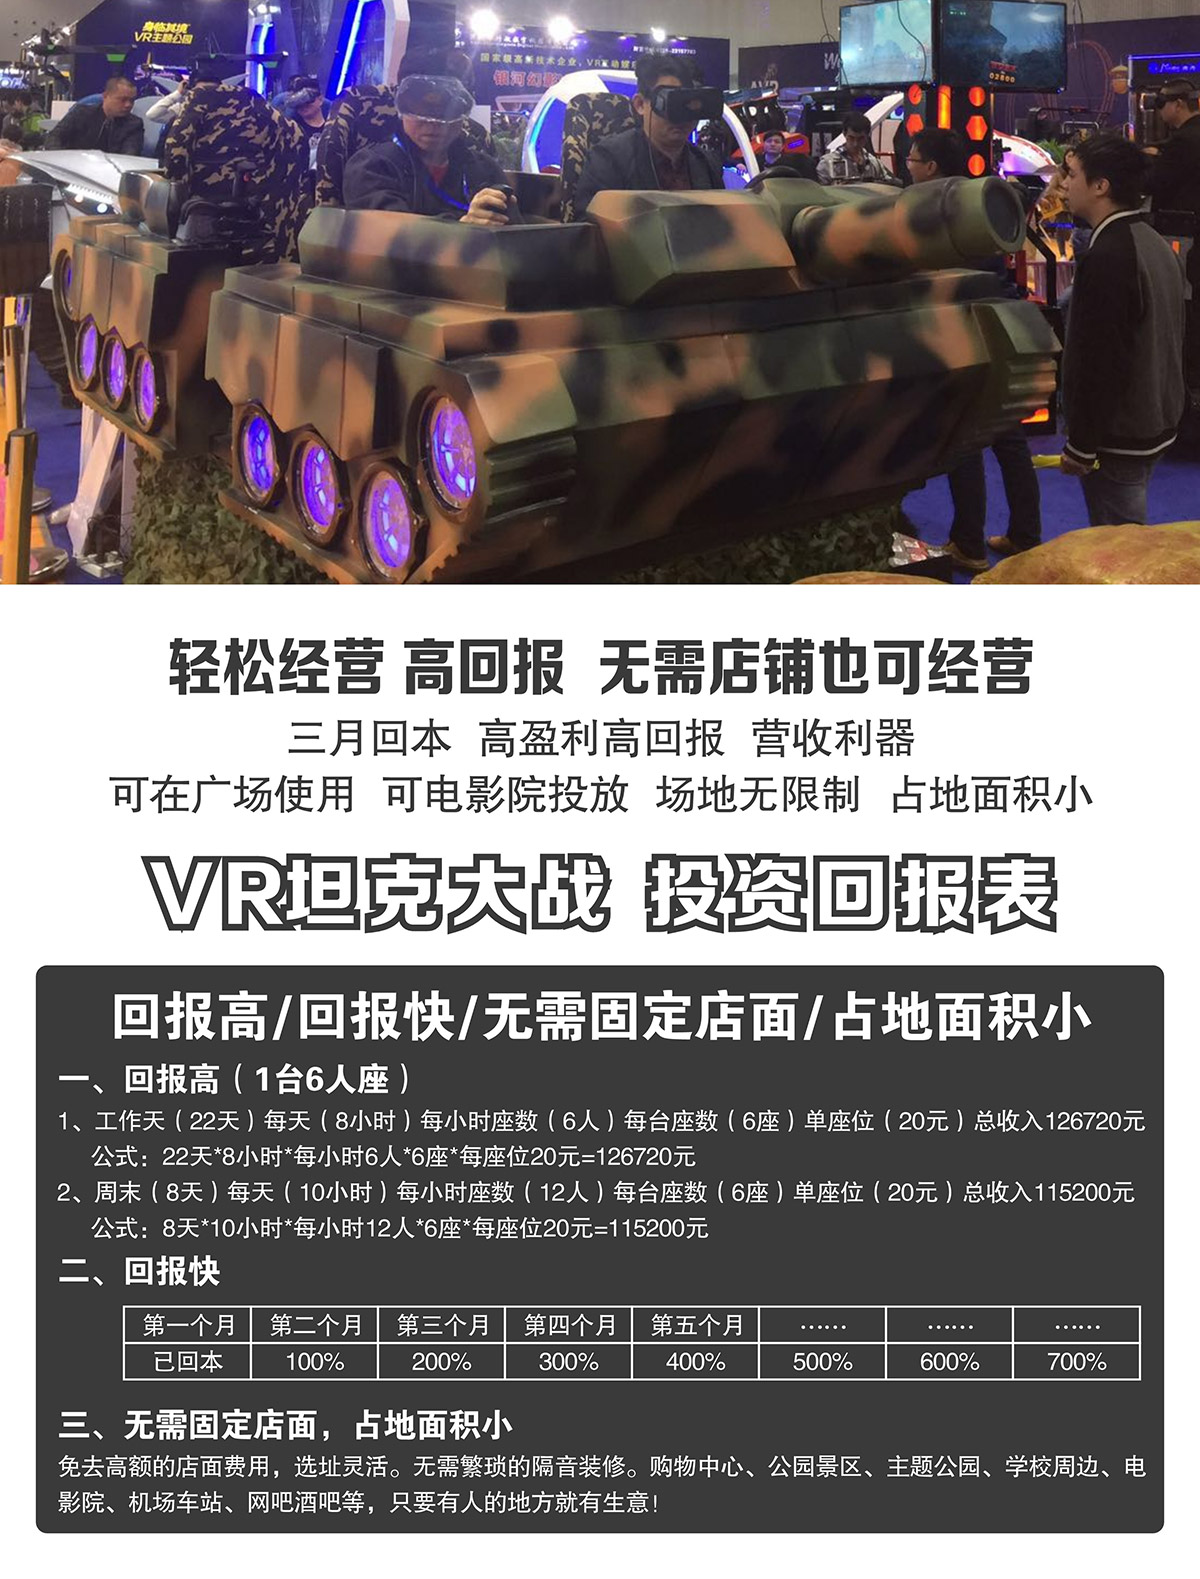 动感影院VR坦克大战投资回报表.jpg